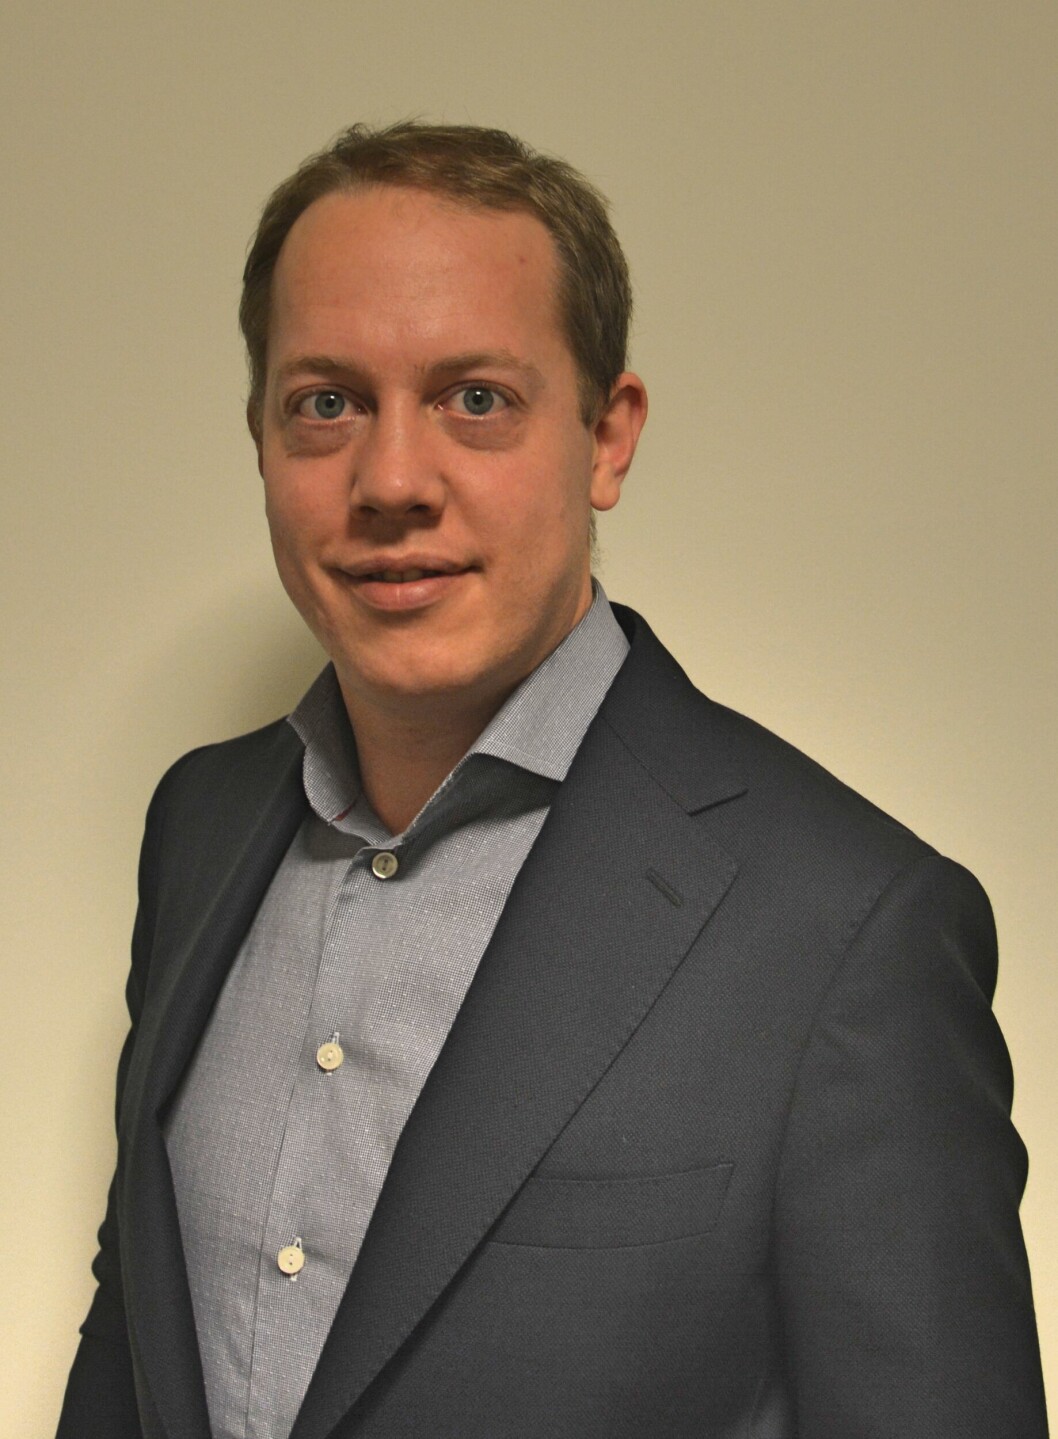 NY JOBB: Hannes Hartin har nylig tiltrådt som ny Key Account Manager i Securelink Norge. (Foto: Securelink)